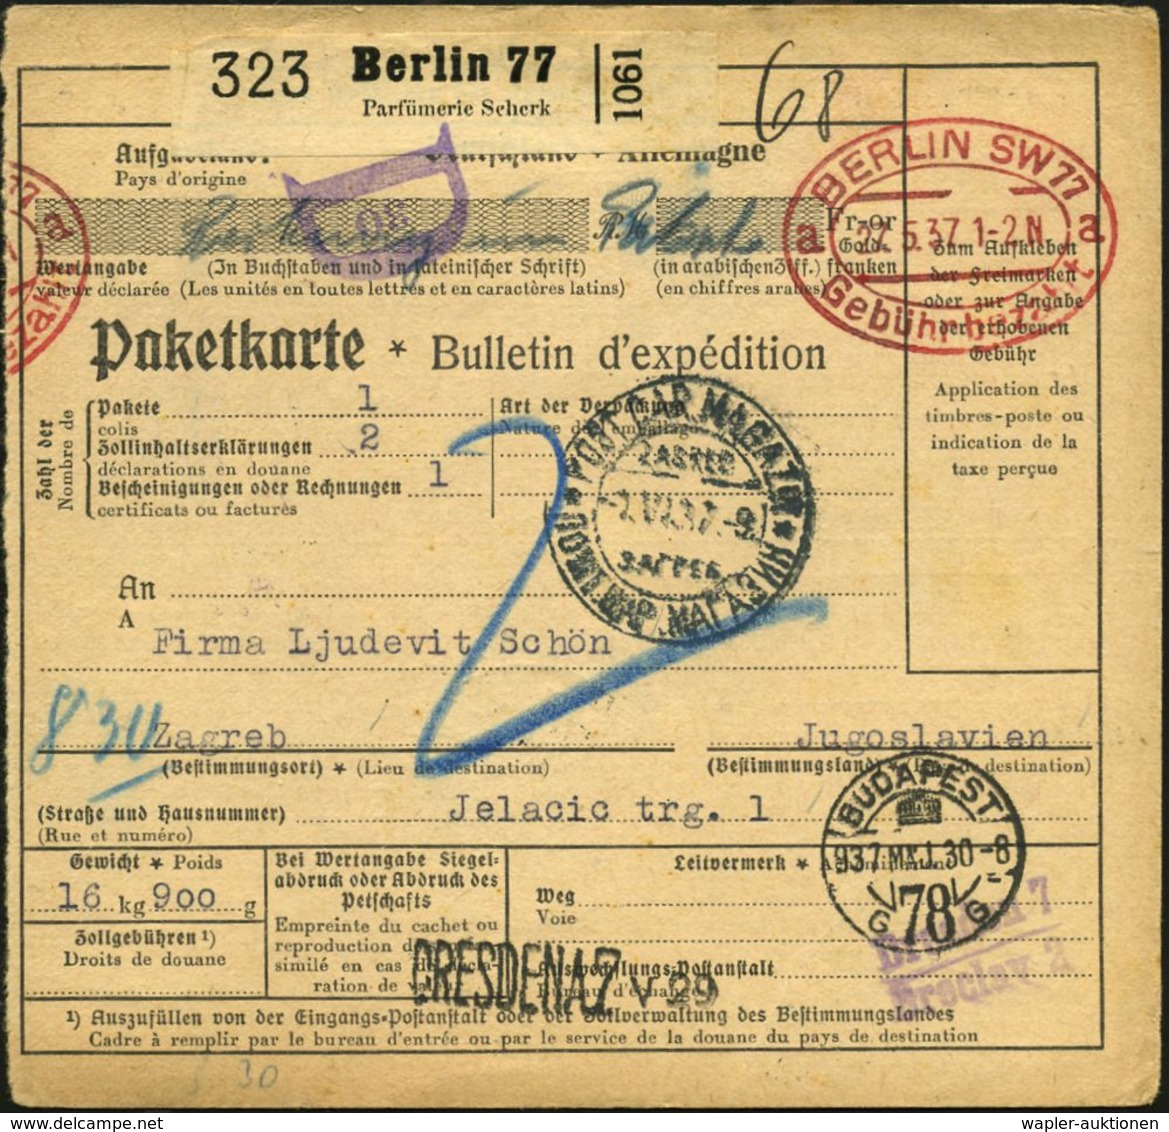 KOSMETIK / PARFÜM : Berlin 77/ Parfümerie Scherk 1937 (27.5.) Selbstbucher-Paketzettel + Ovaler PFS: BERLIN SW77/a A/Geb - Pharmacy